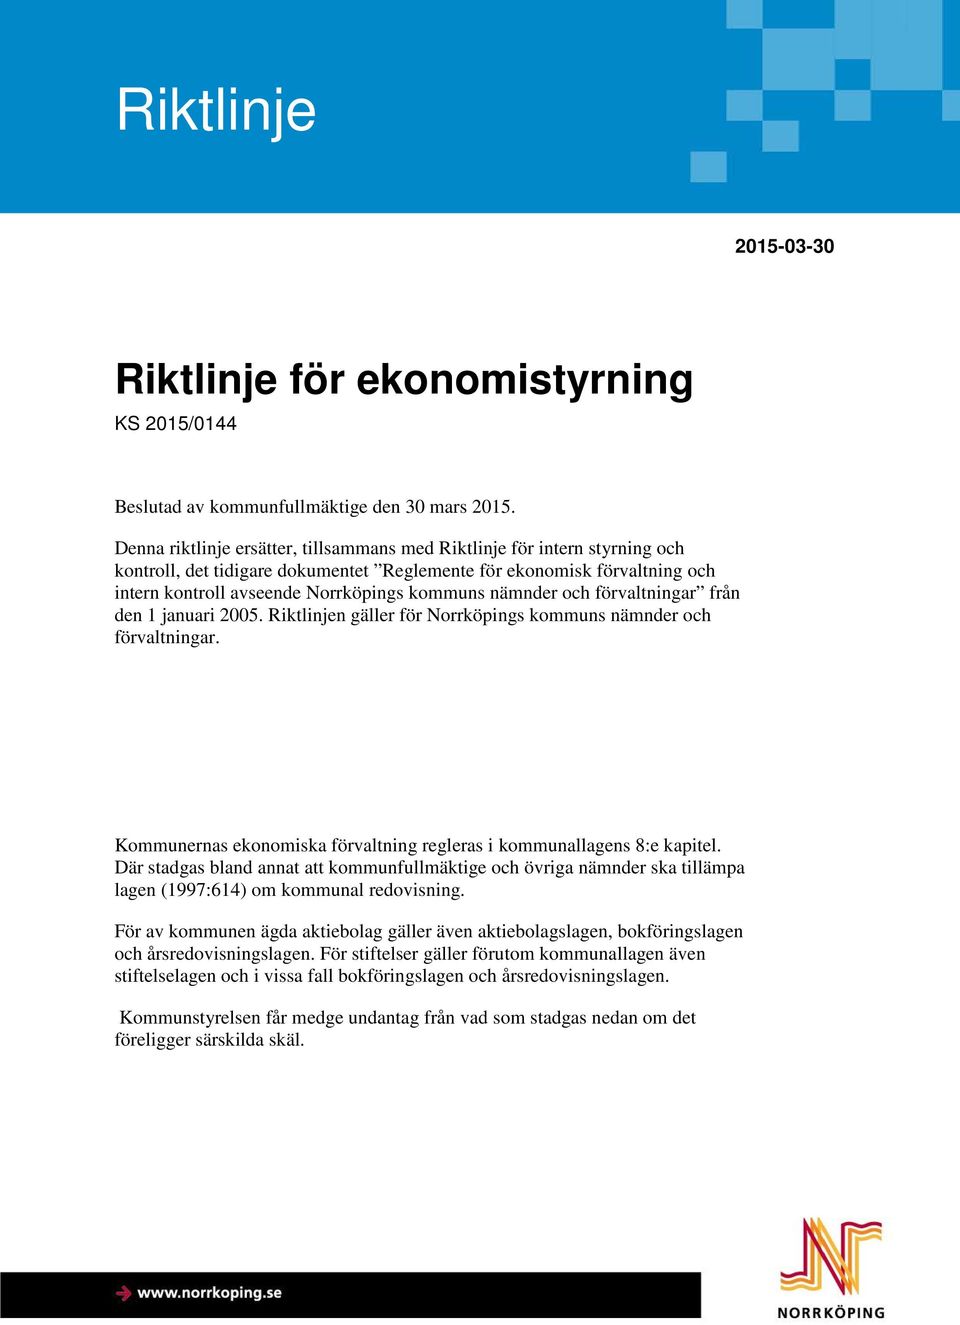 nämnder och förvaltningar från den 1 januari 2005. Riktlinjen gäller för Norrköpings kommuns nämnder och förvaltningar. Kommunernas ekonomiska förvaltning regleras i kommunallagens 8:e kapitel.